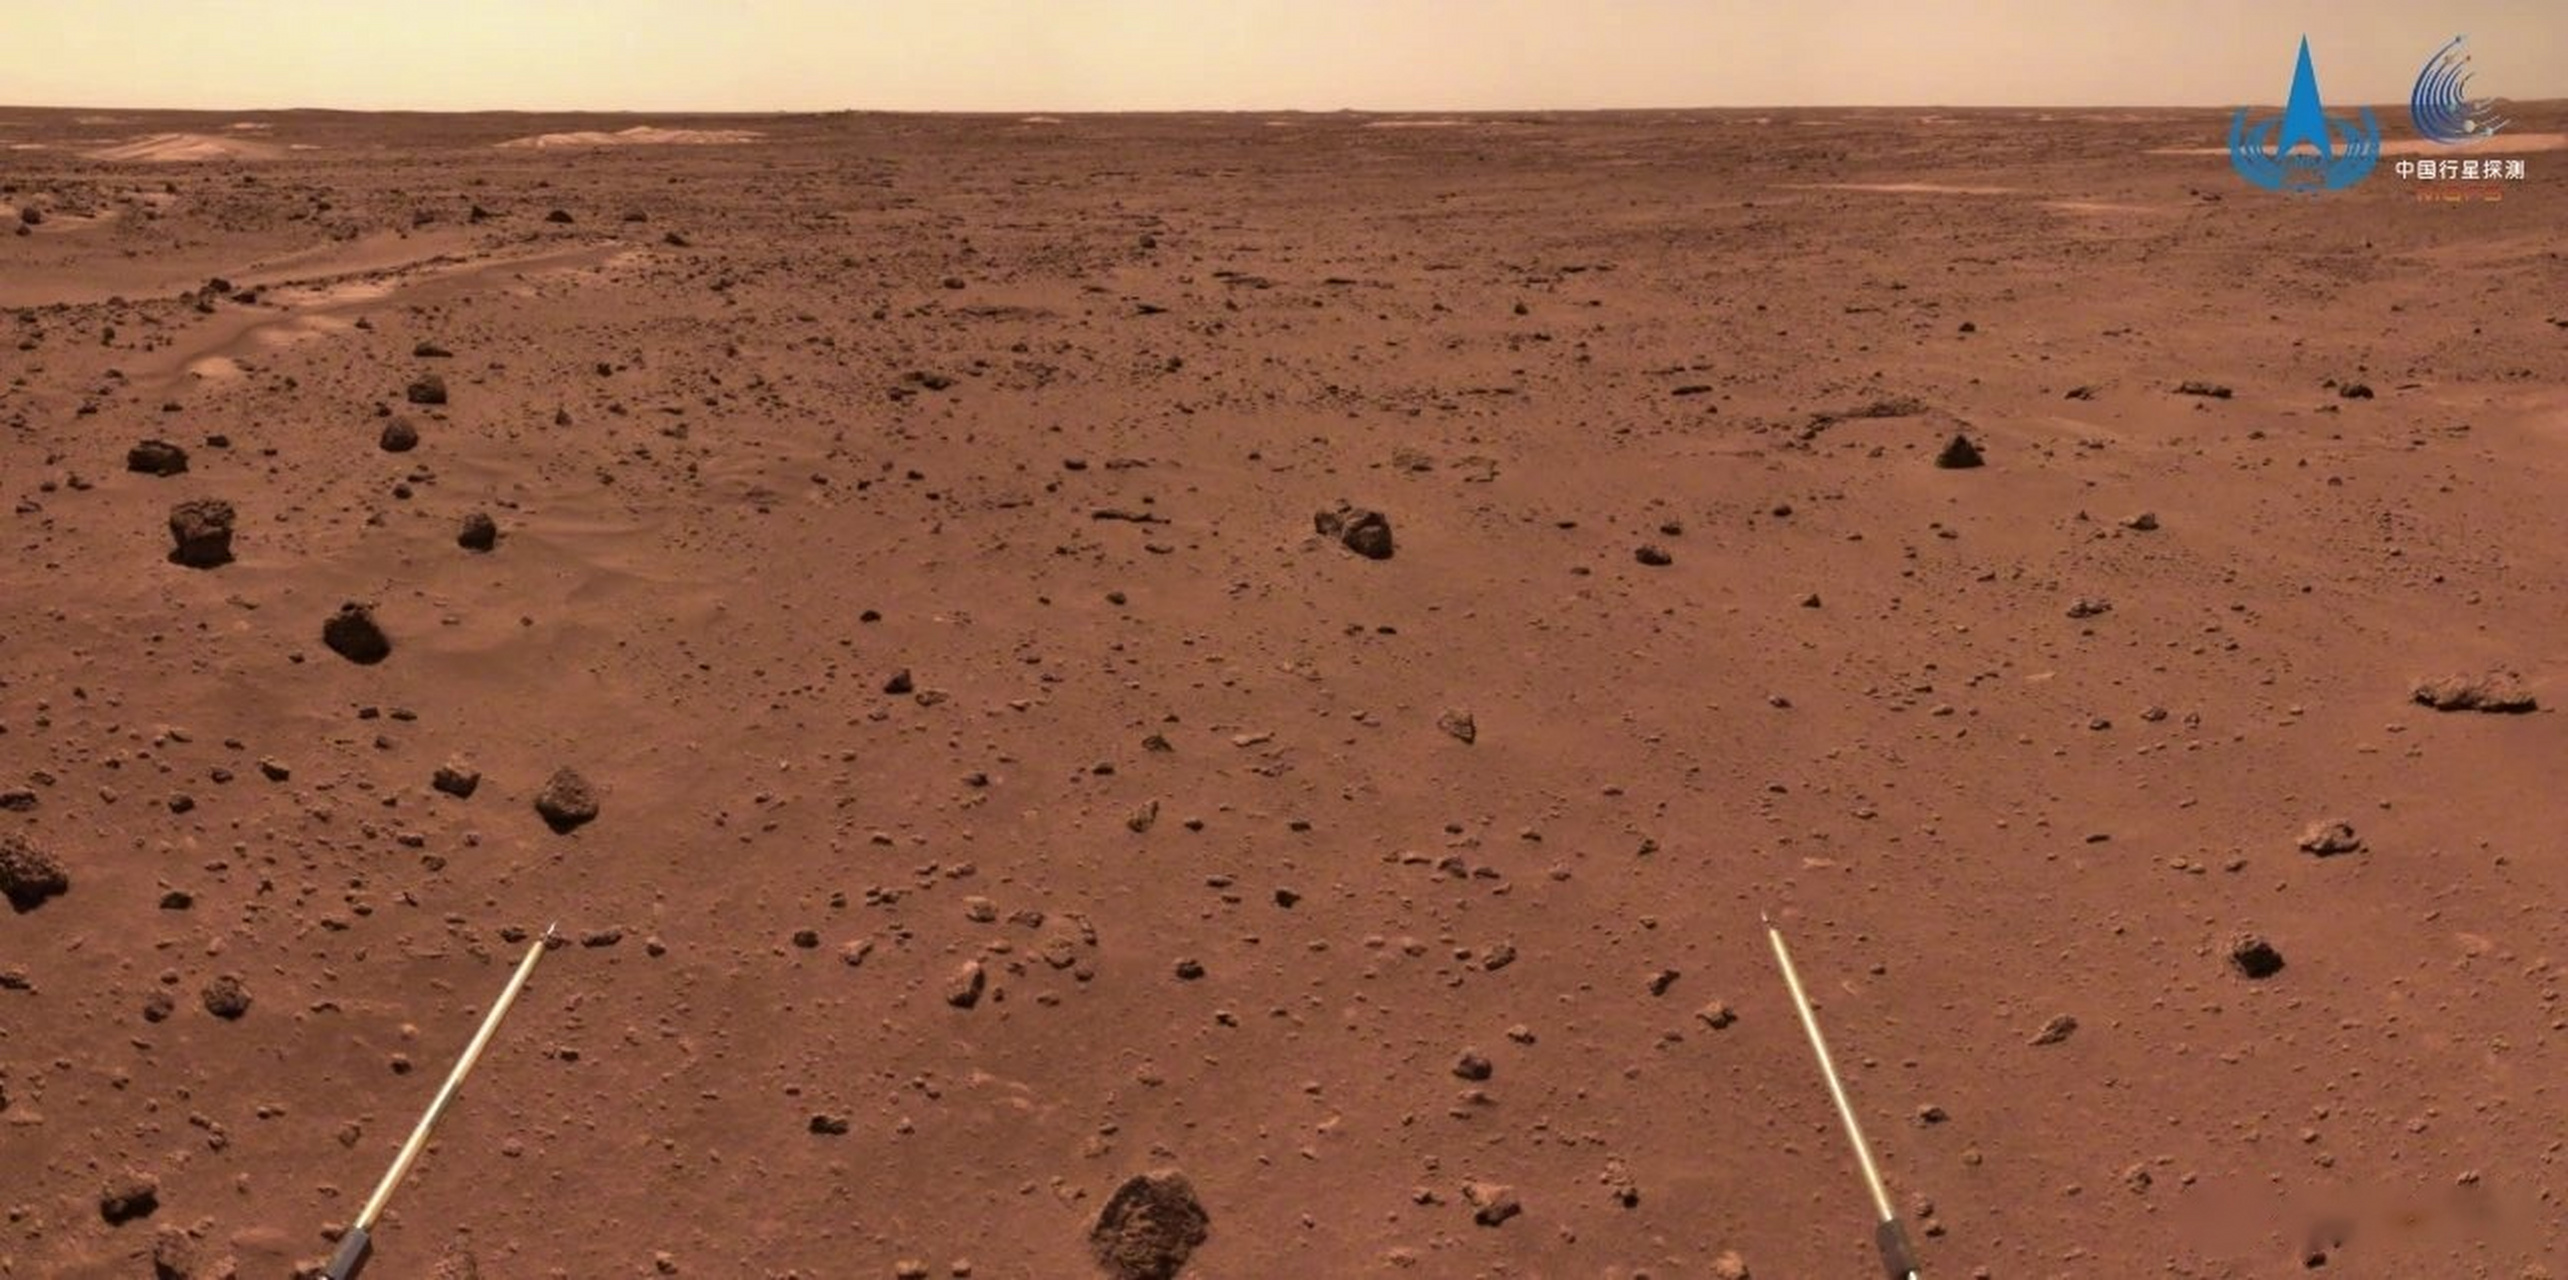 【祝融号开始穿越火星表面复杂地形地带】记者从国家航天局获悉,祝融